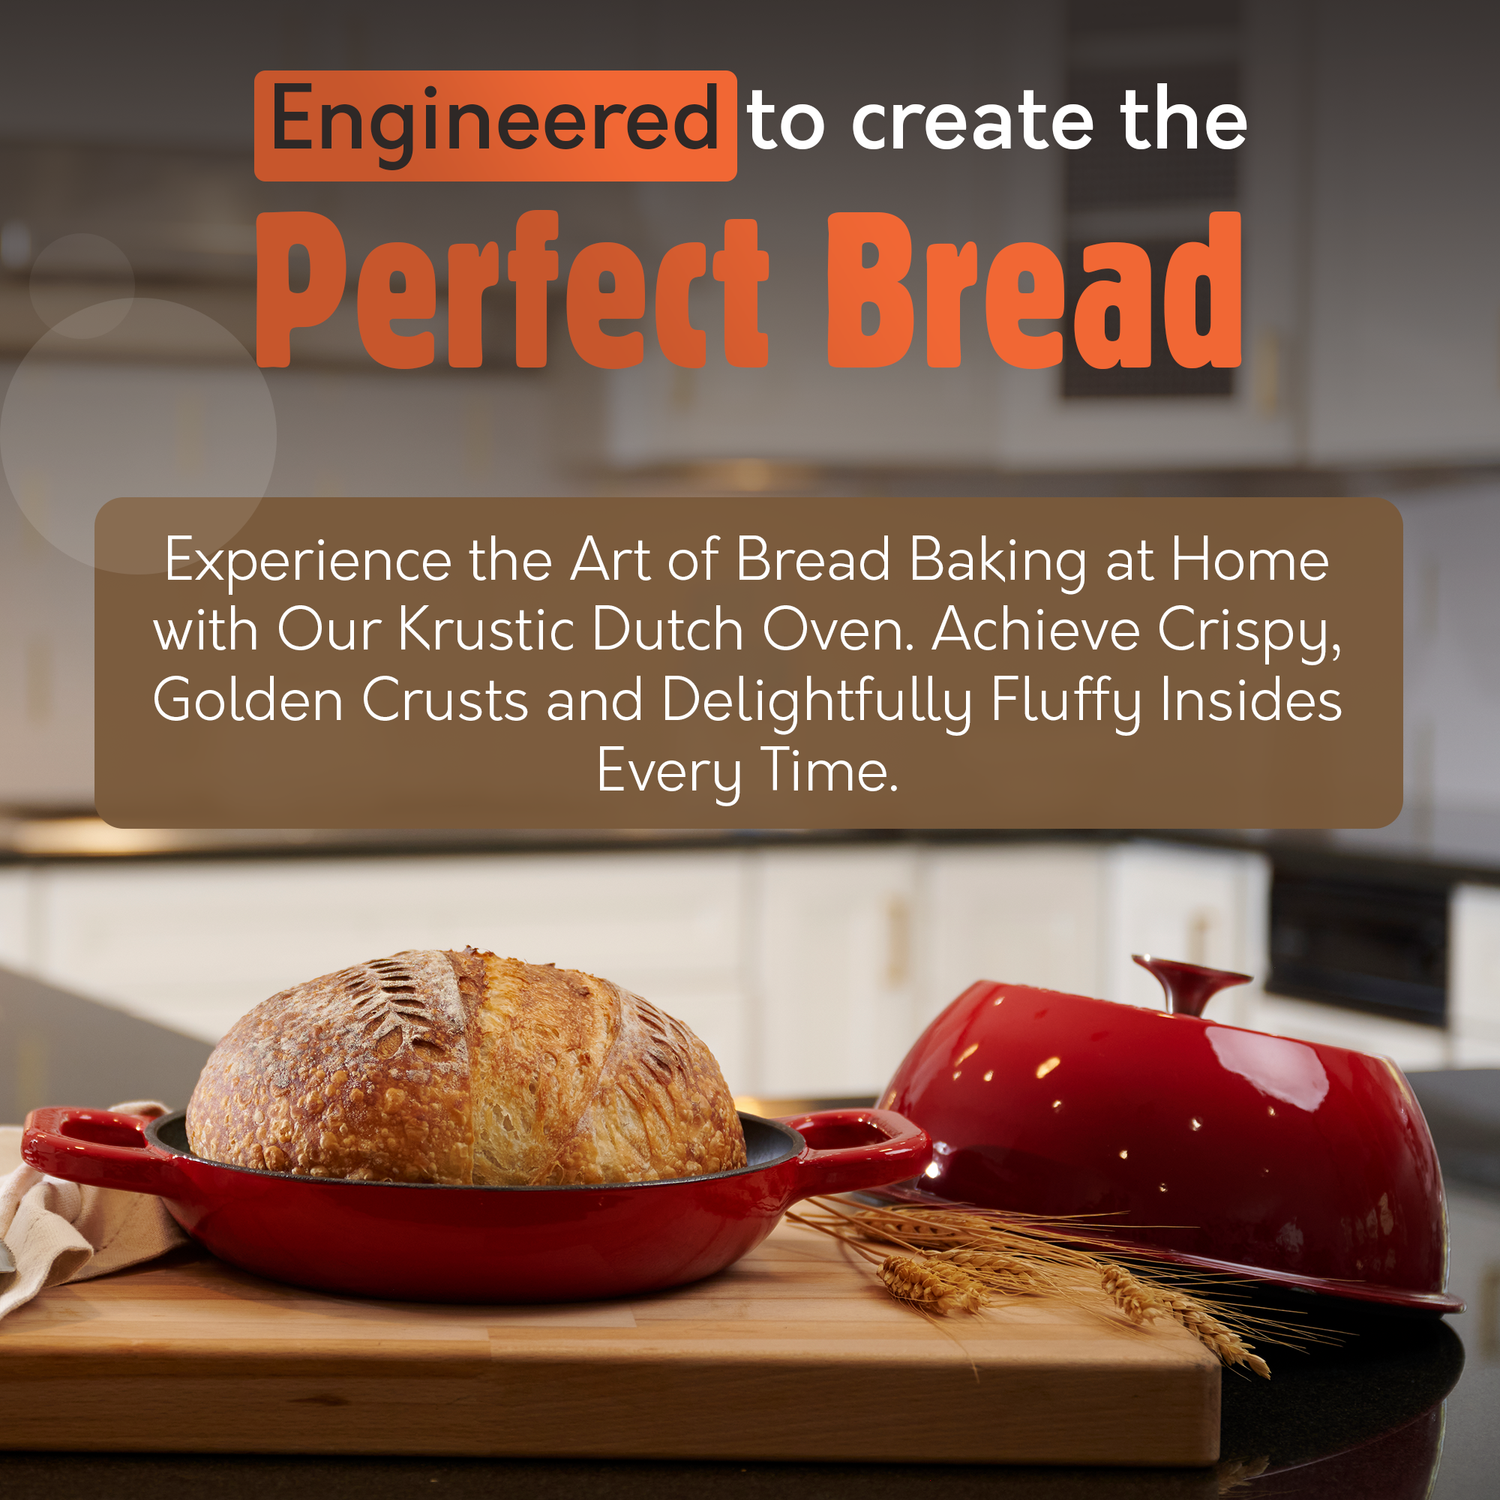  Krustic Enameled Cast Iron Dutch Oven for Sourdough Bread Baking, 6 Quart Pot with Lid